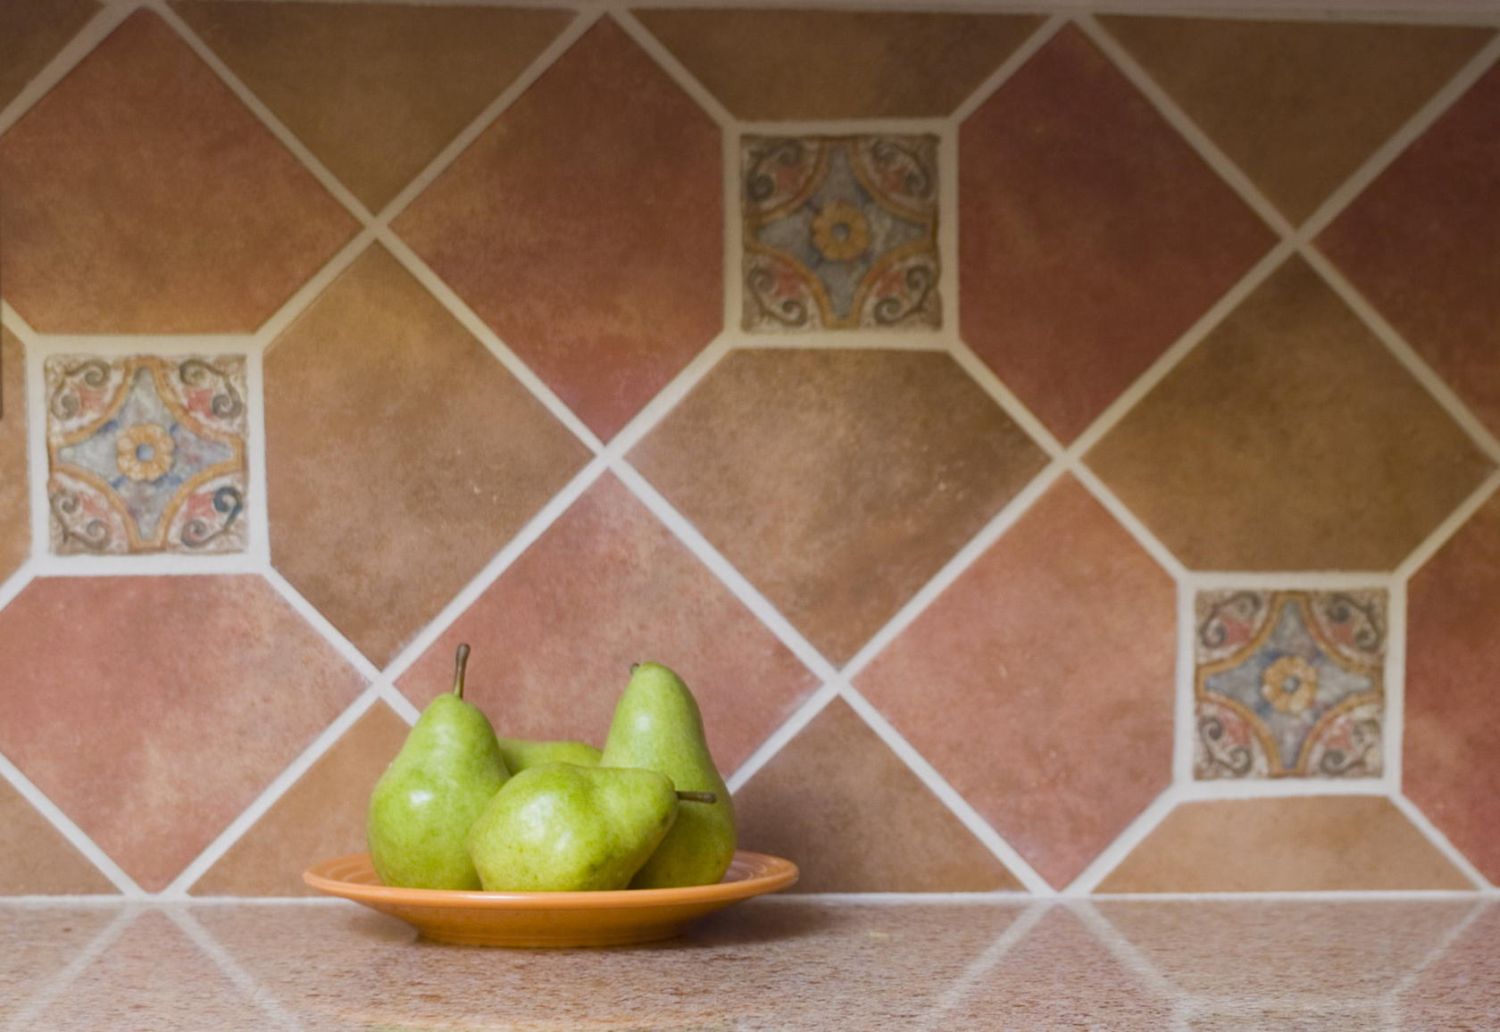 Terracotta backsplash tiles